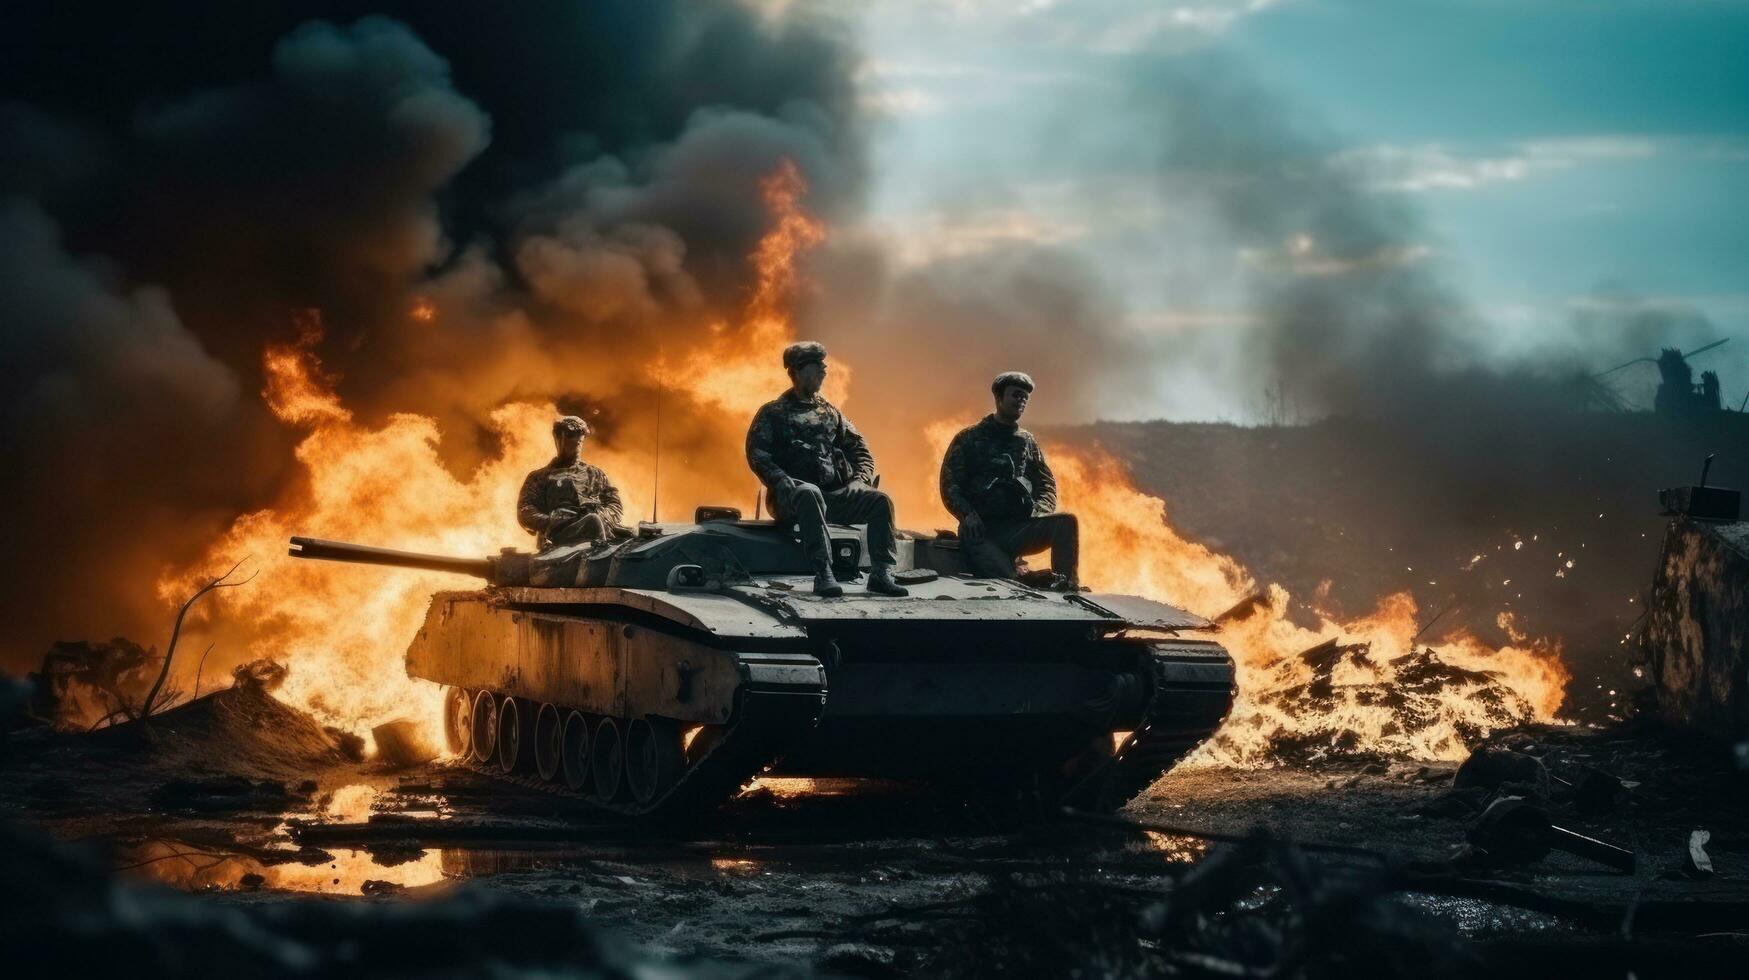 militares branco homens em uma queimado tanque foto